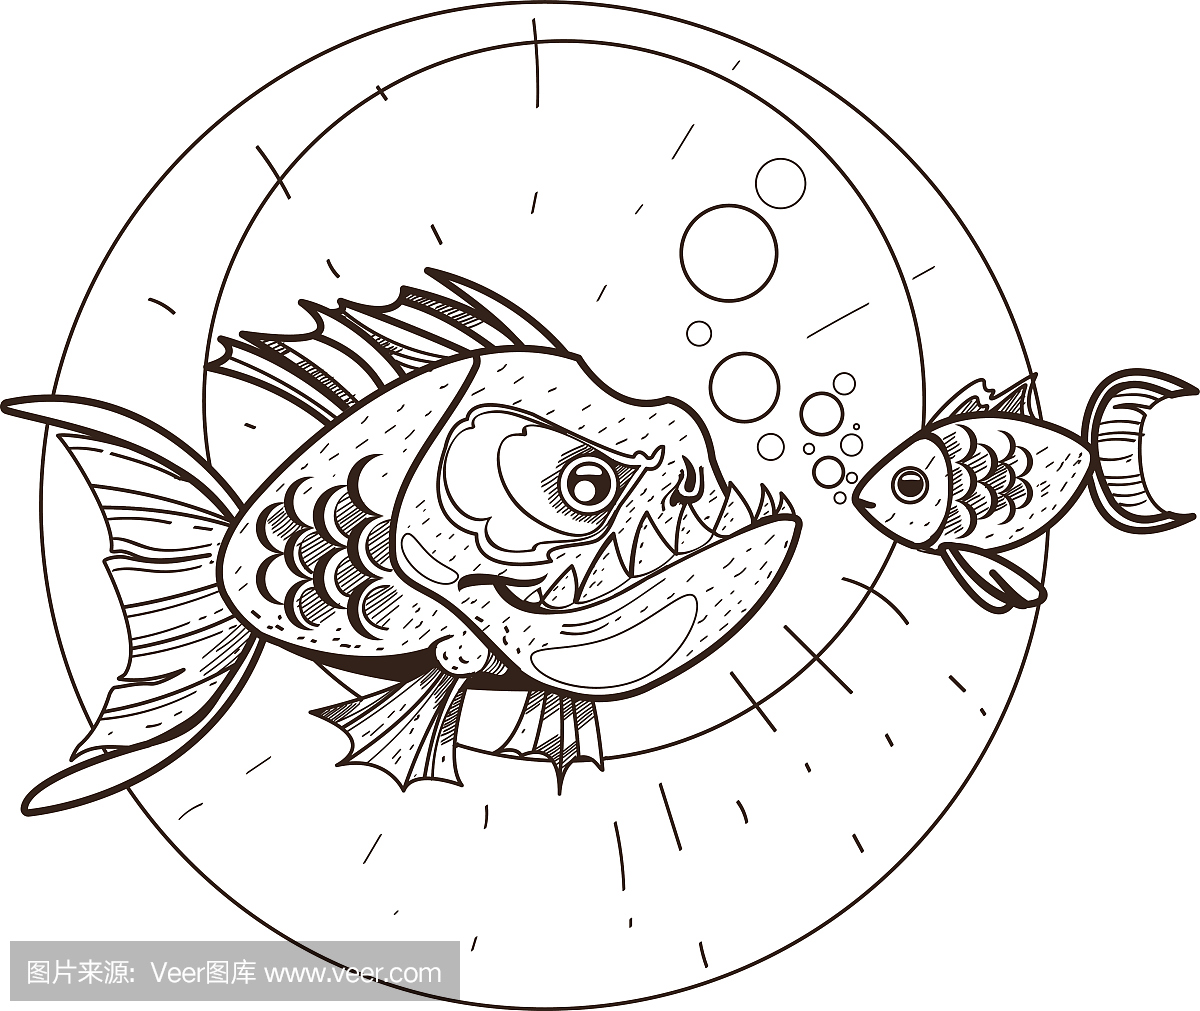 比拉鱼和金鱼。在海洋主题的剪贴画。动物保护